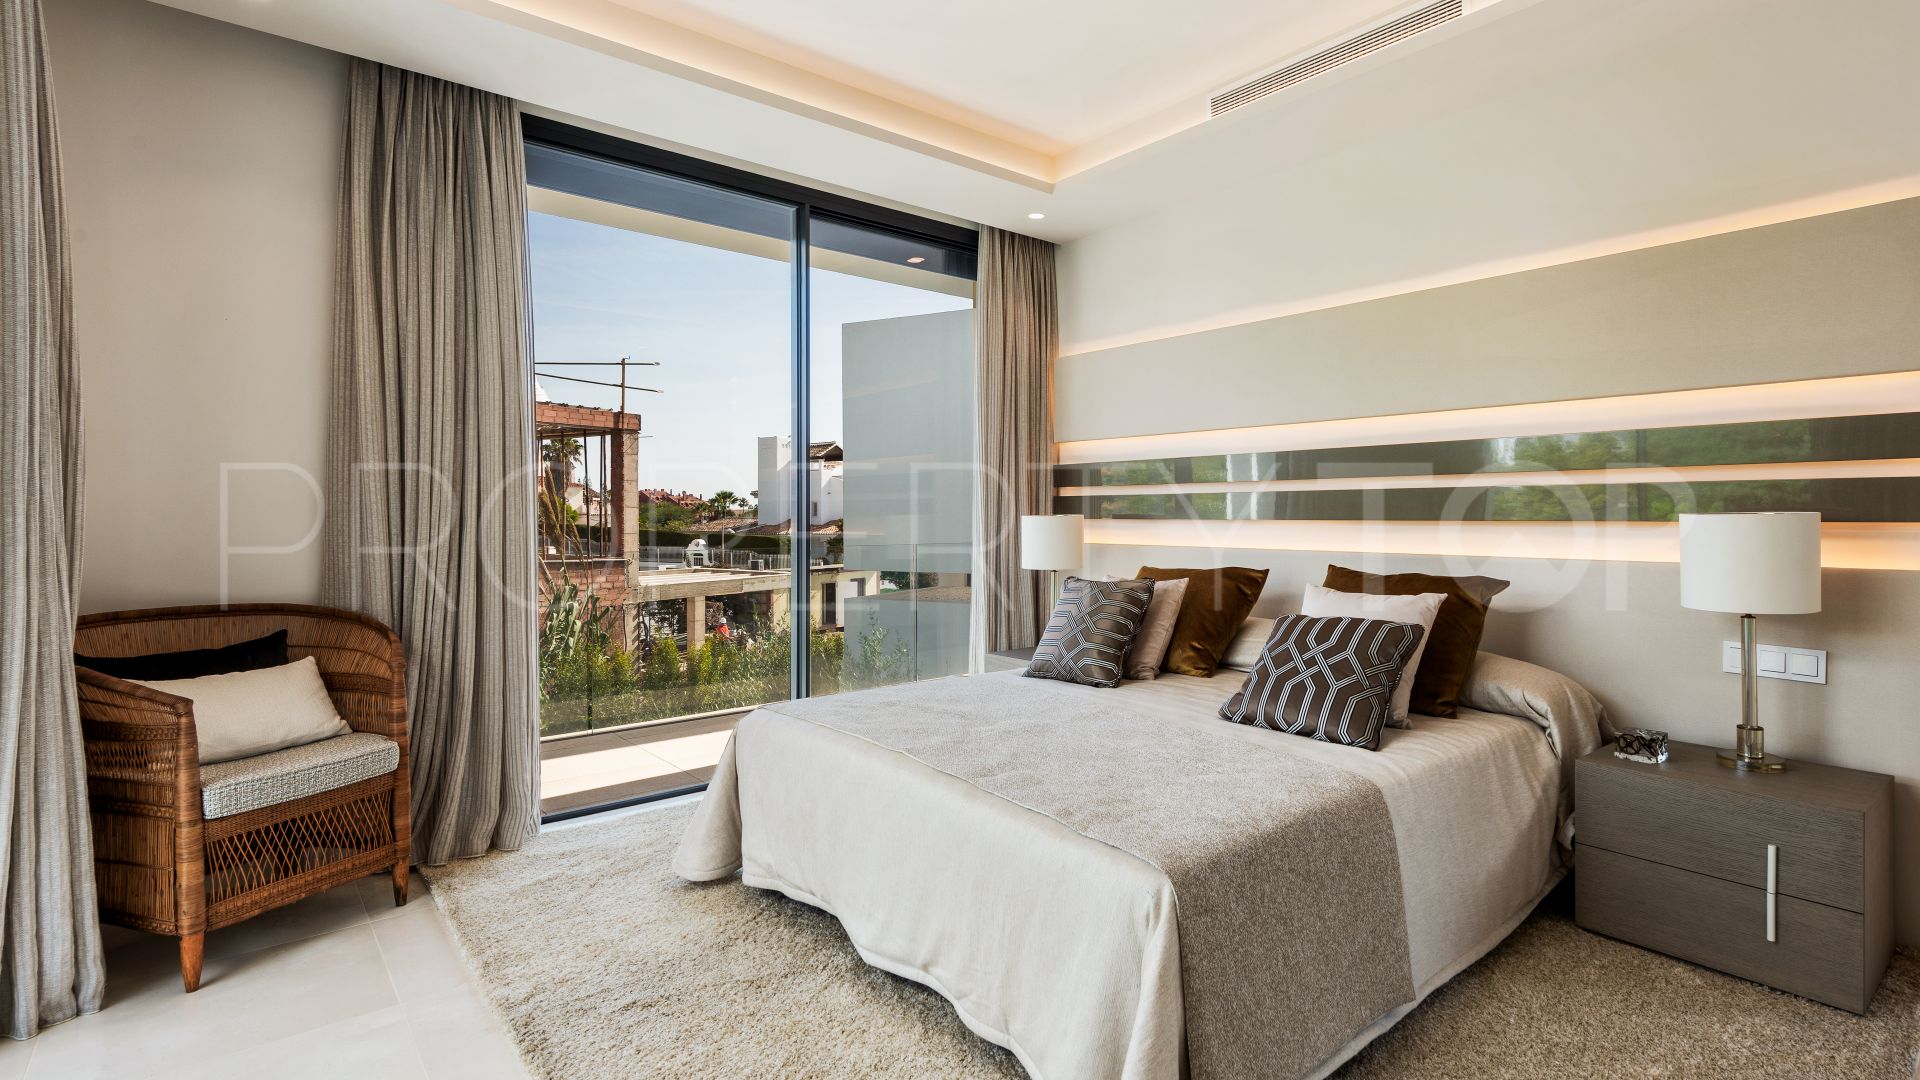 5 bedrooms Real de Zaragoza villa for sale